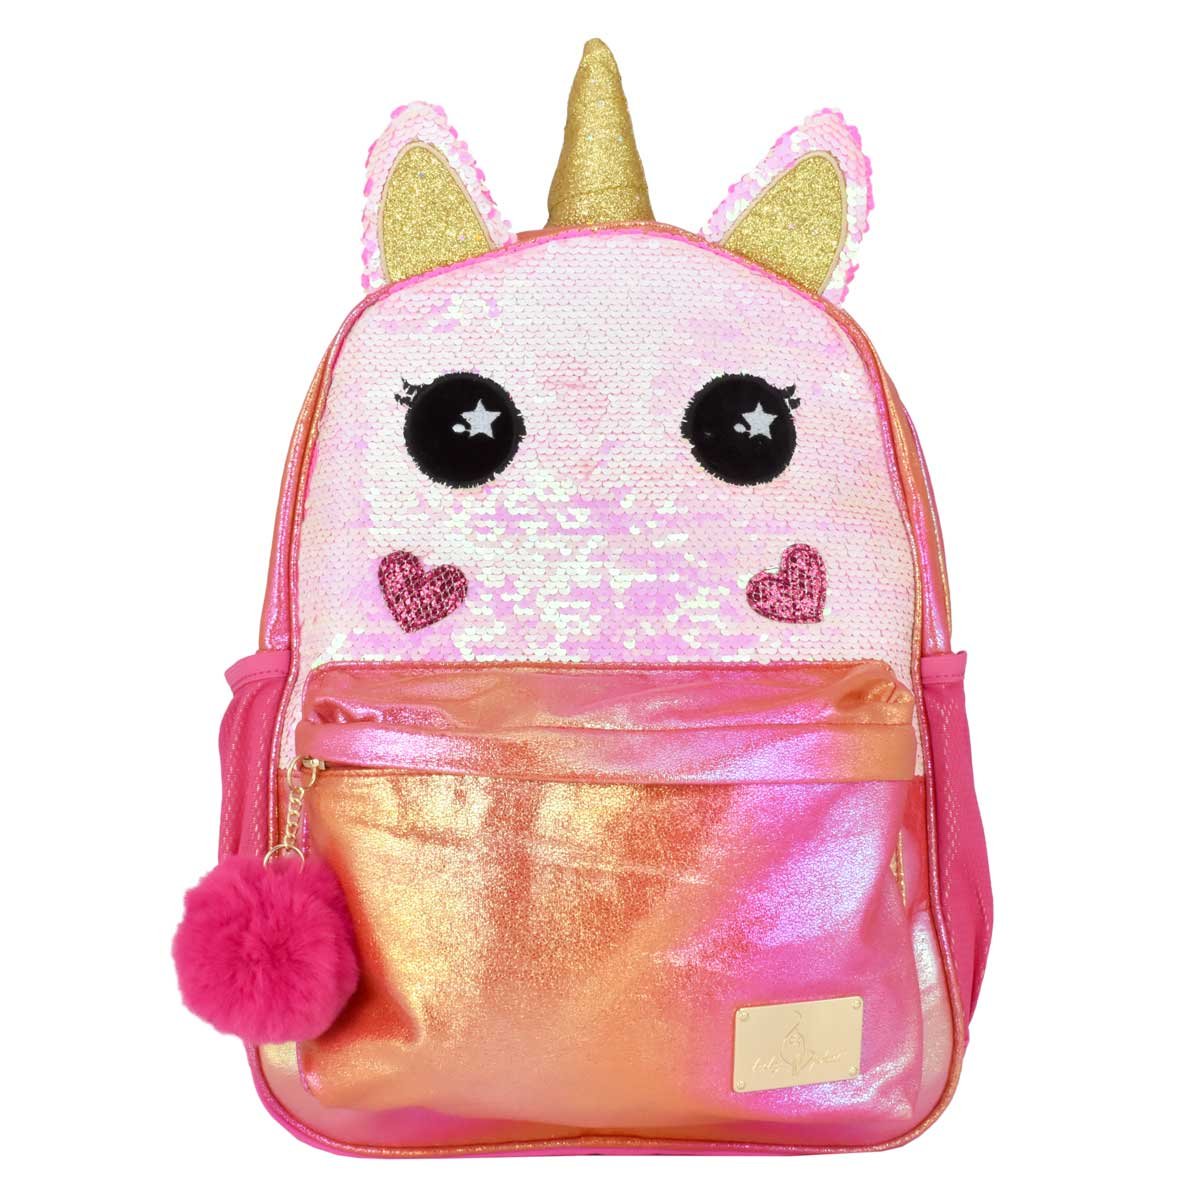 Backpack Forma de Unicornio Baby Phat